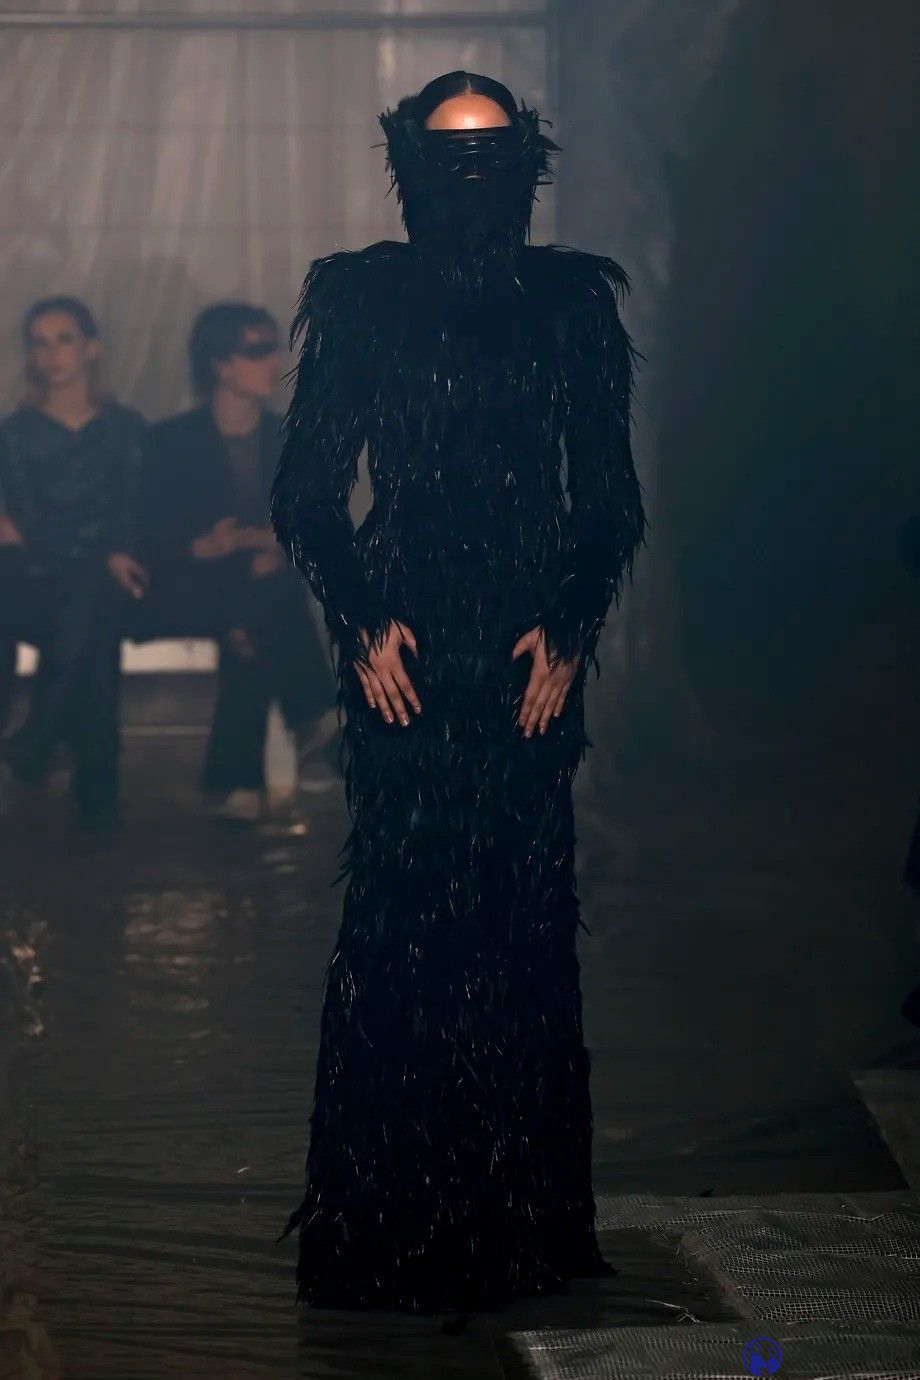 《暗黑破坏神4》主题服装亮相米兰时装周 这服装很地狱_图片